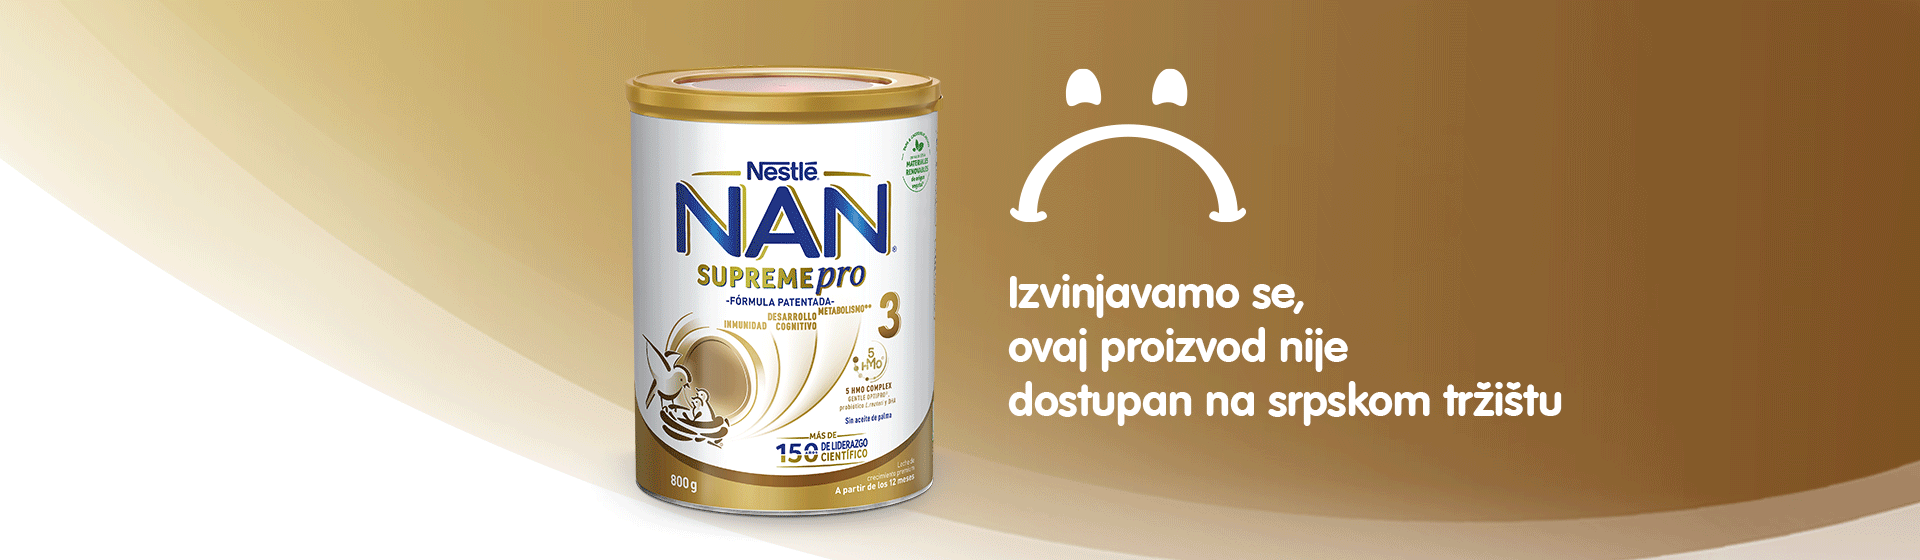 banner-nan-supreme